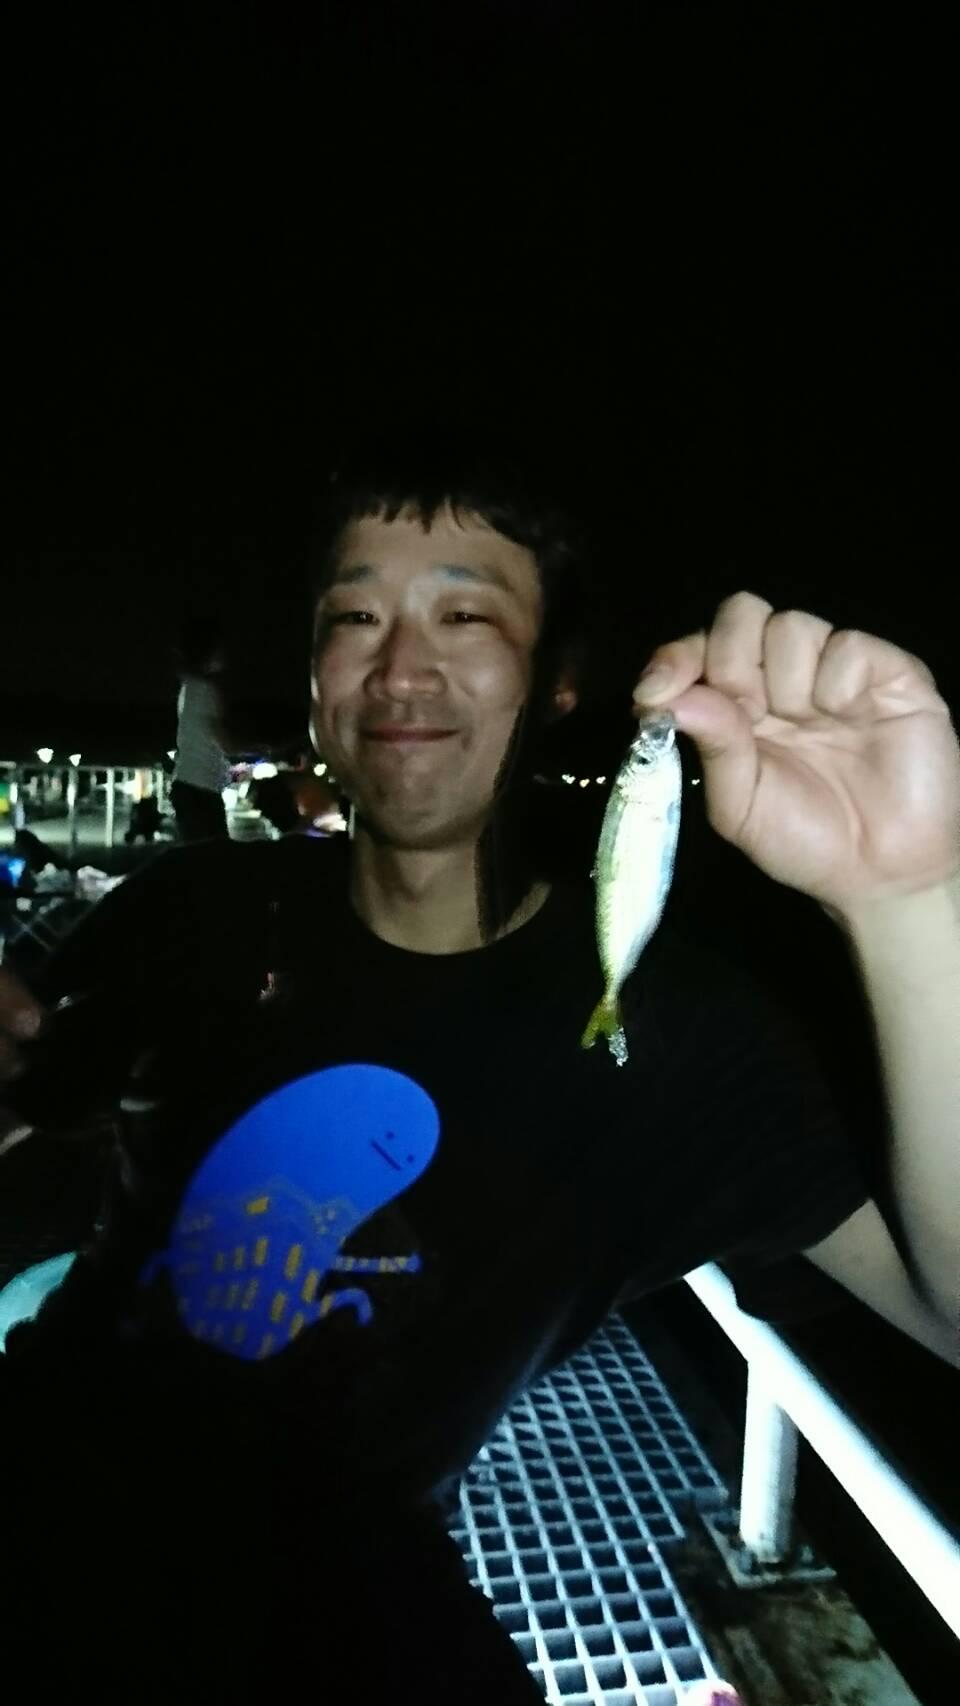 イシグロ半田店 豊浜釣り桟橋 夜のサビキ釣りでアジ釣れています 釣具のイシグロ 釣り情報サイト